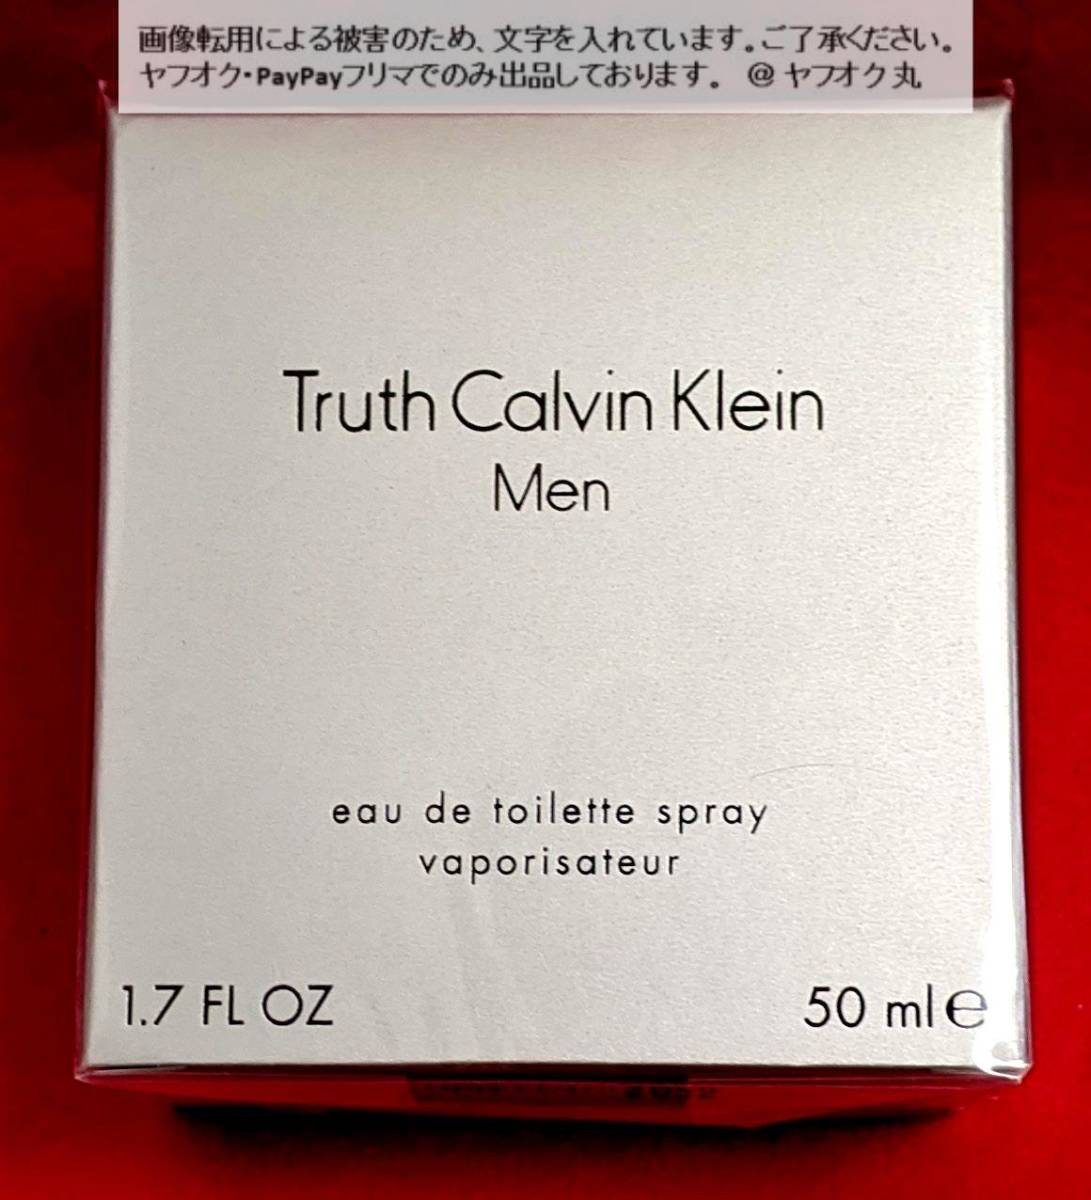 [ нераспечатанный бесплатная доставка *] Calvin Klein CALVIN KLEINtu разрозненный o-doto трещина спрей 50ml / духи аромат Truth мужской мужчина Men